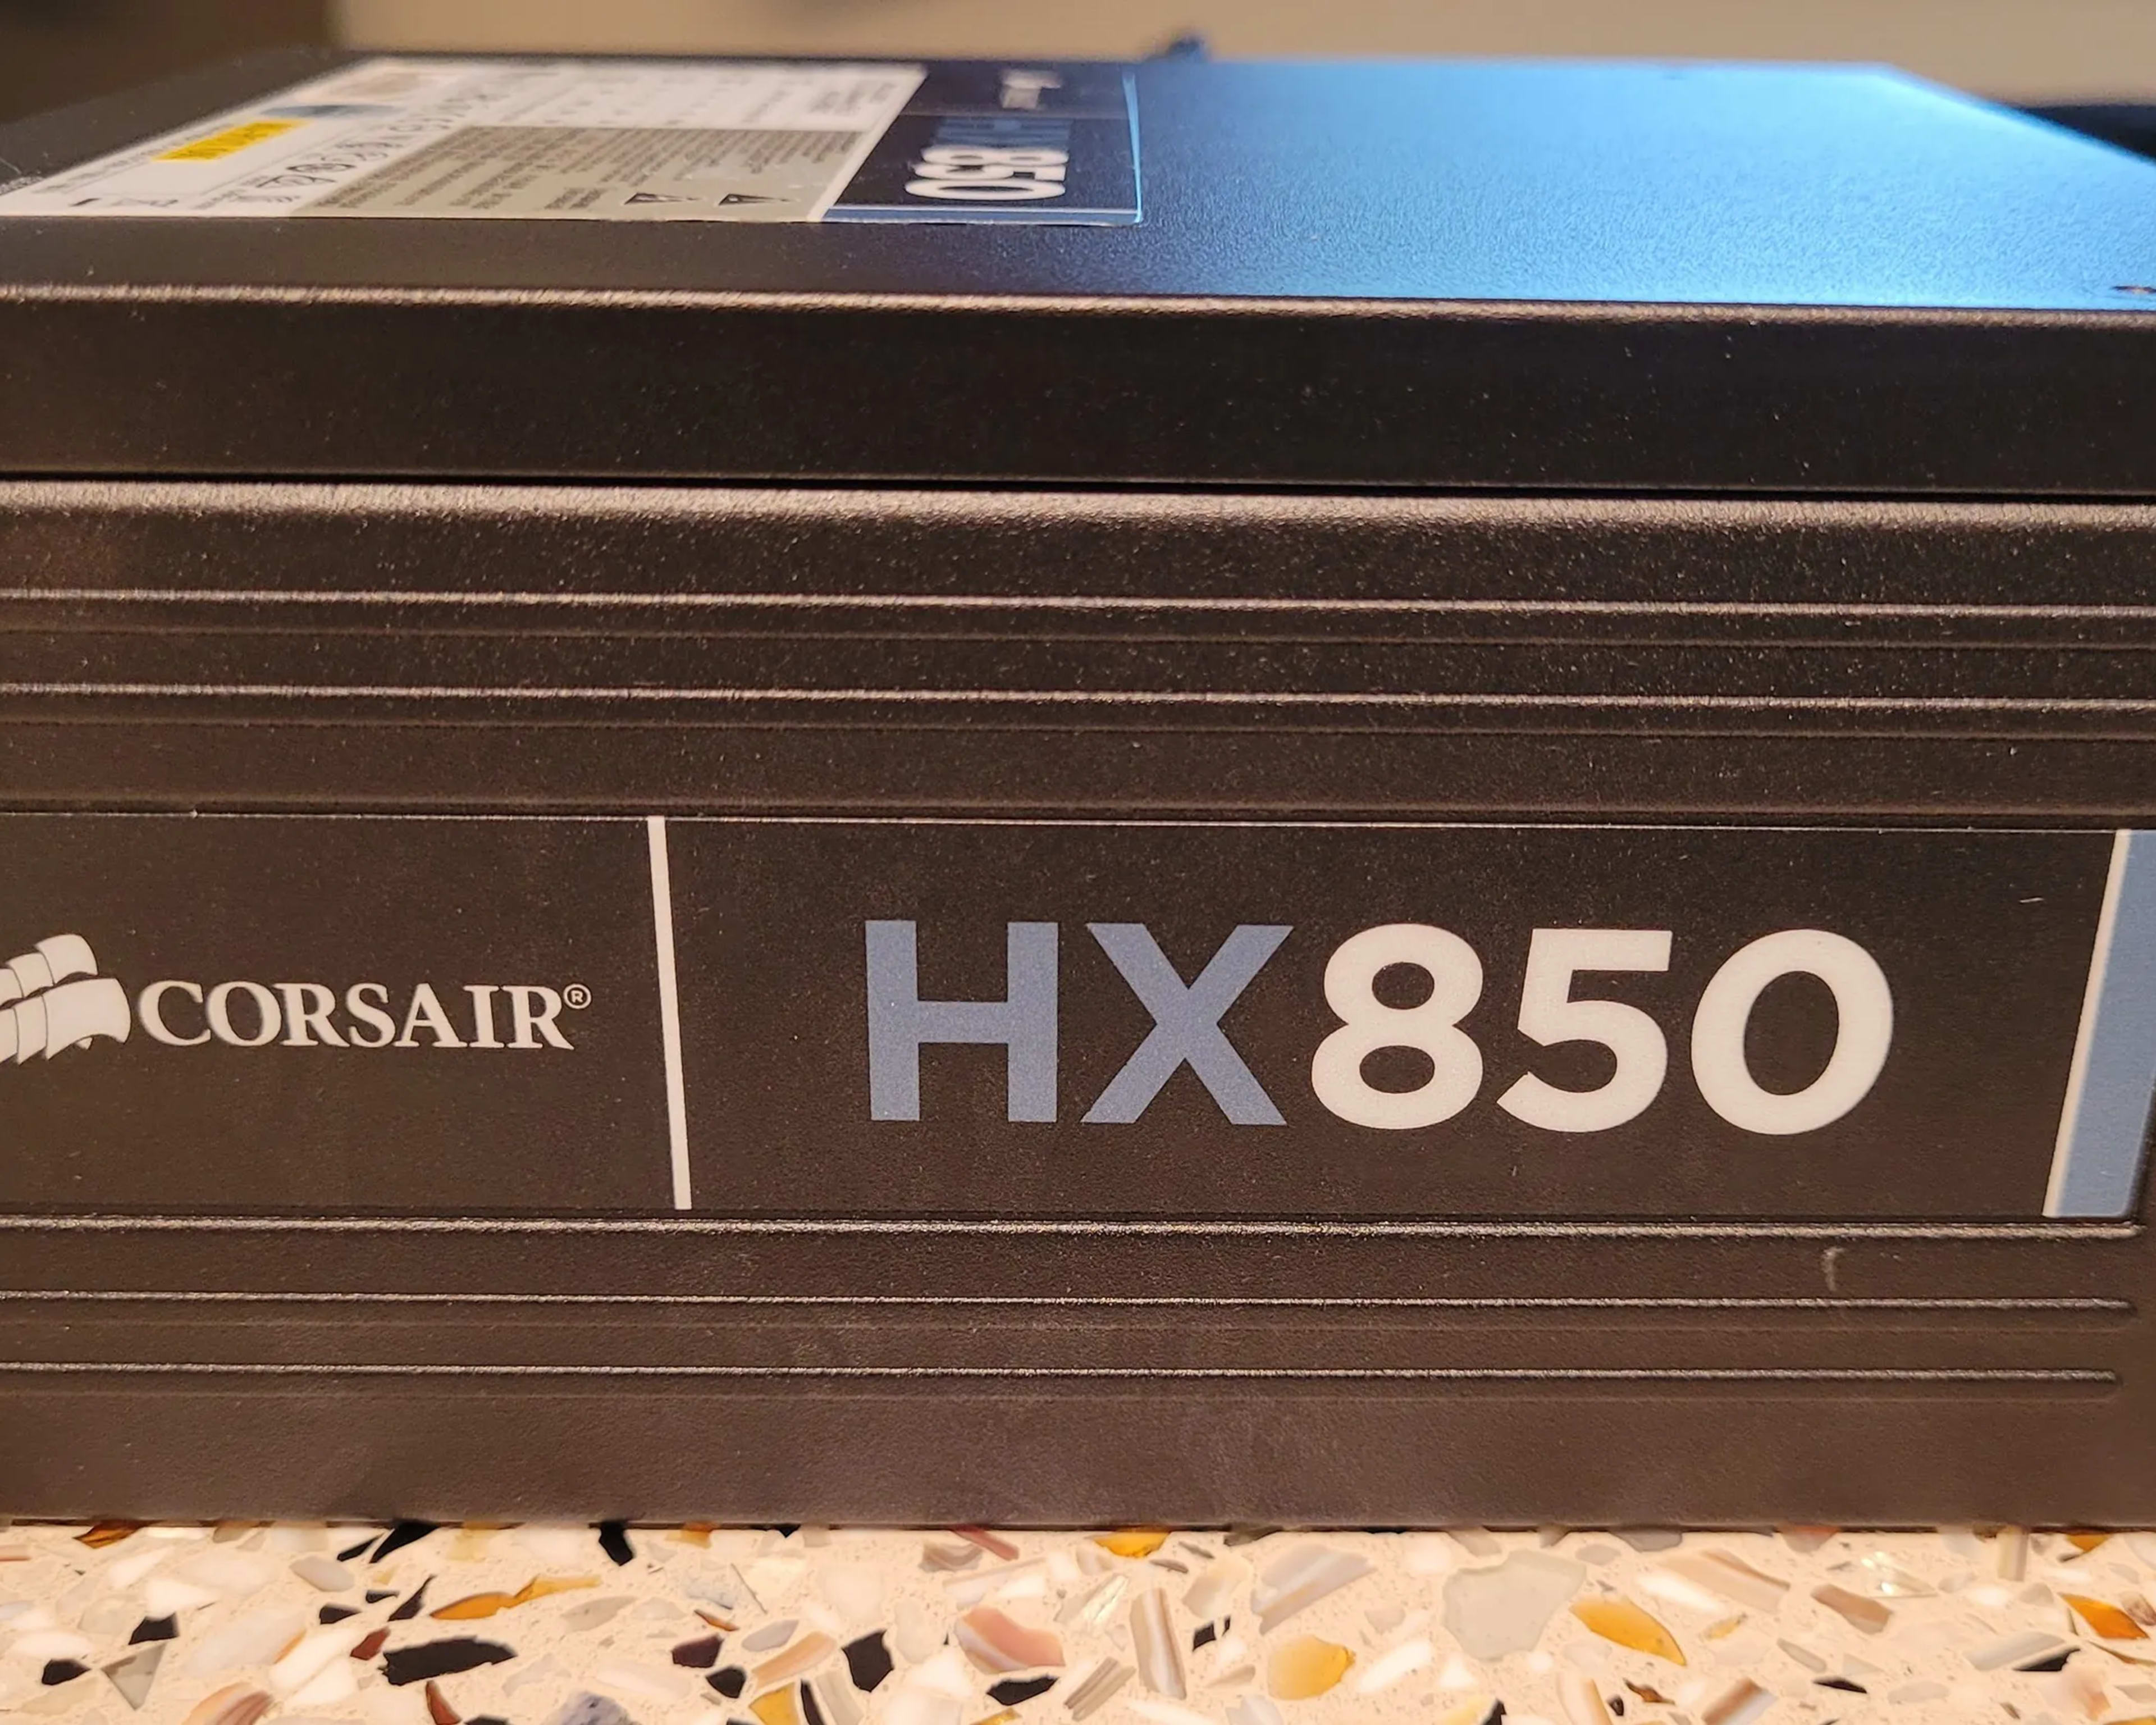 Corsair HX 850 PSU